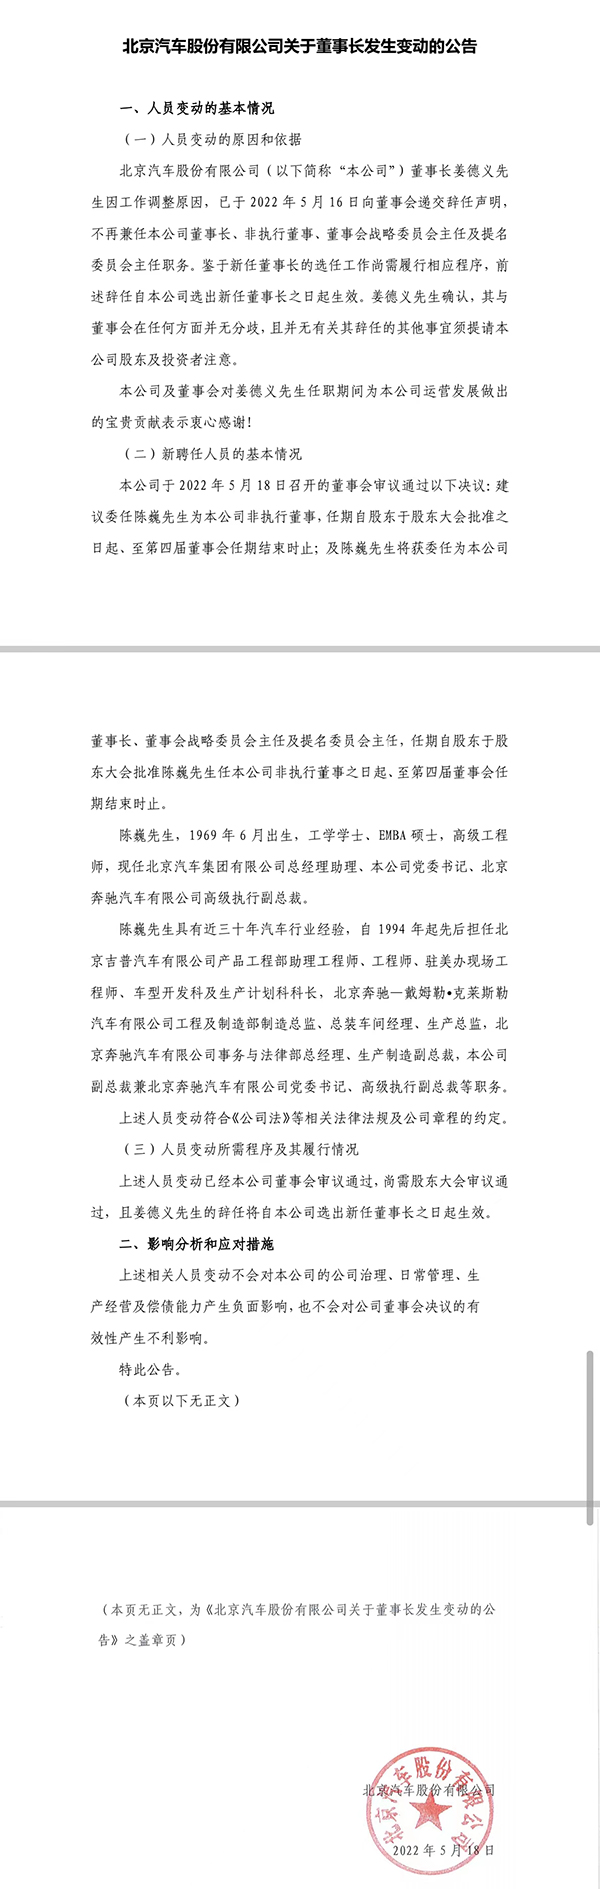 北京汽车：董事长姜德义因工作调整原因辞任